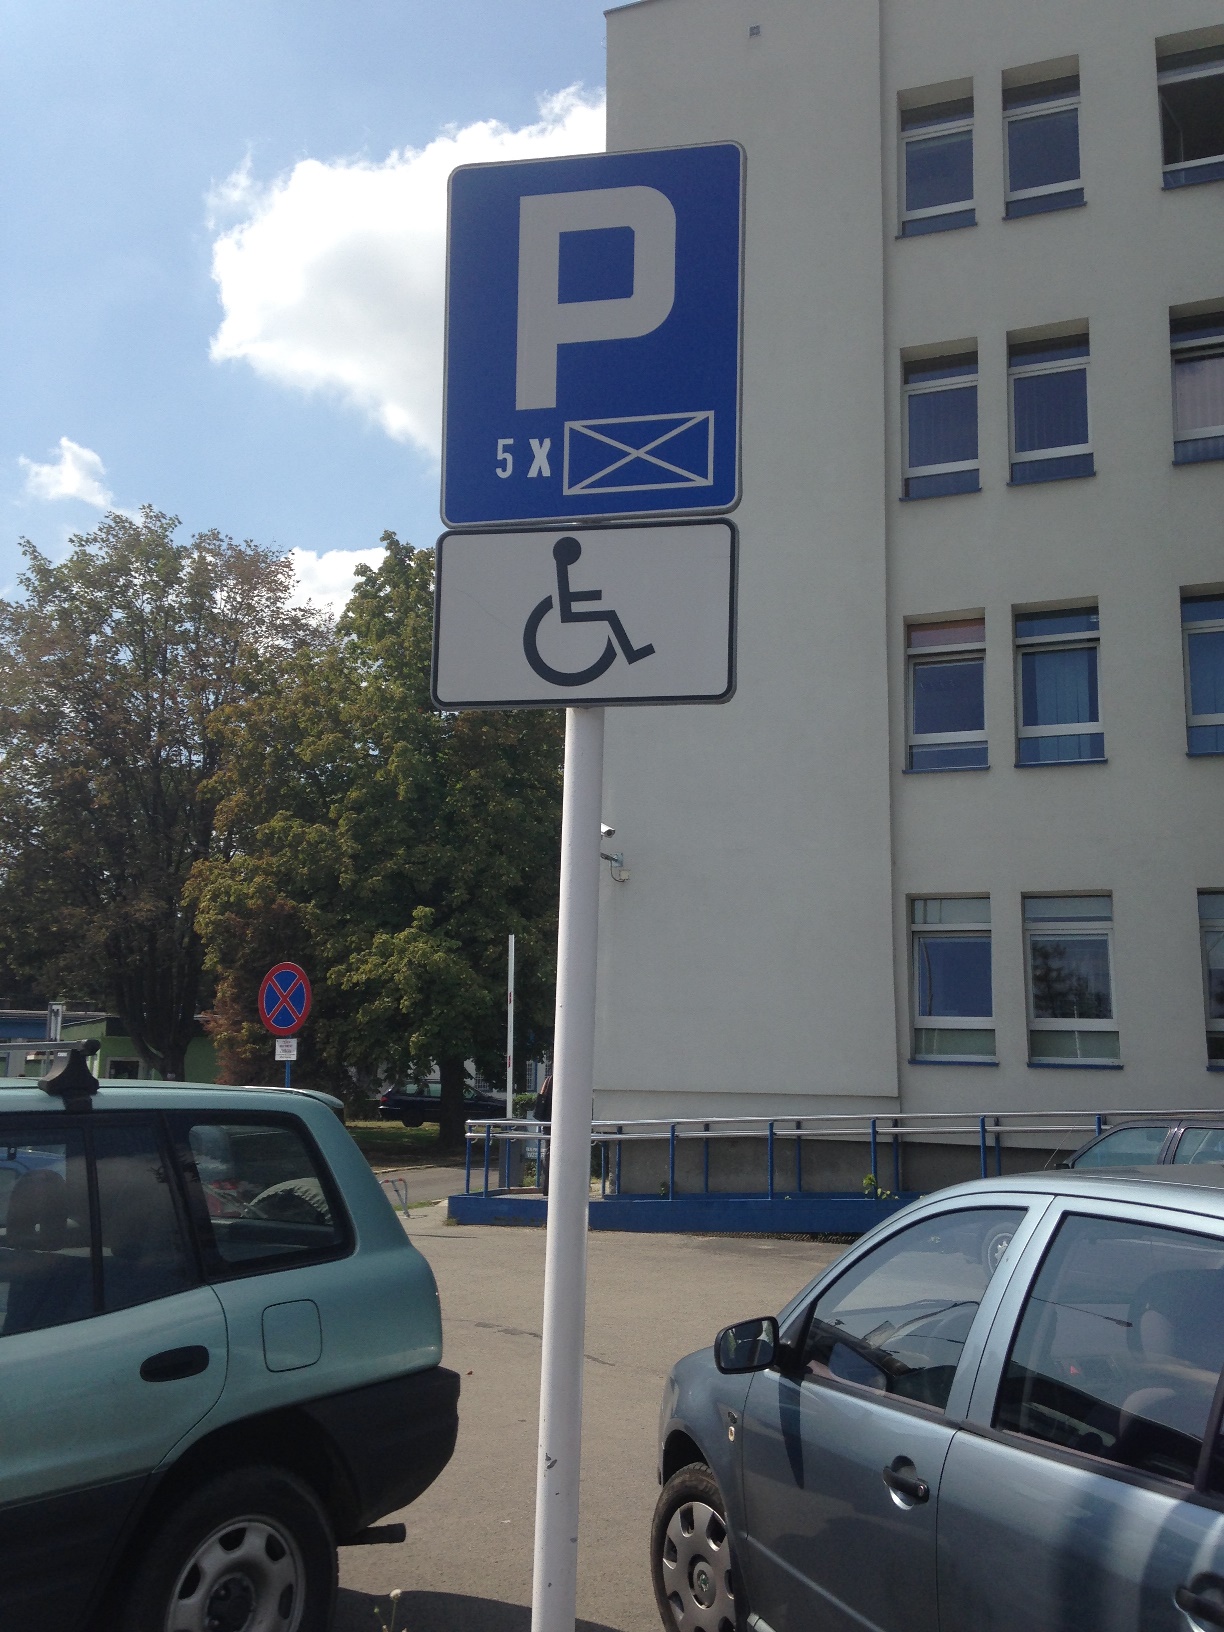 Parking - oznakowanie miejsc parkingowych przeznaczonych dla osób niepełnosprawnych